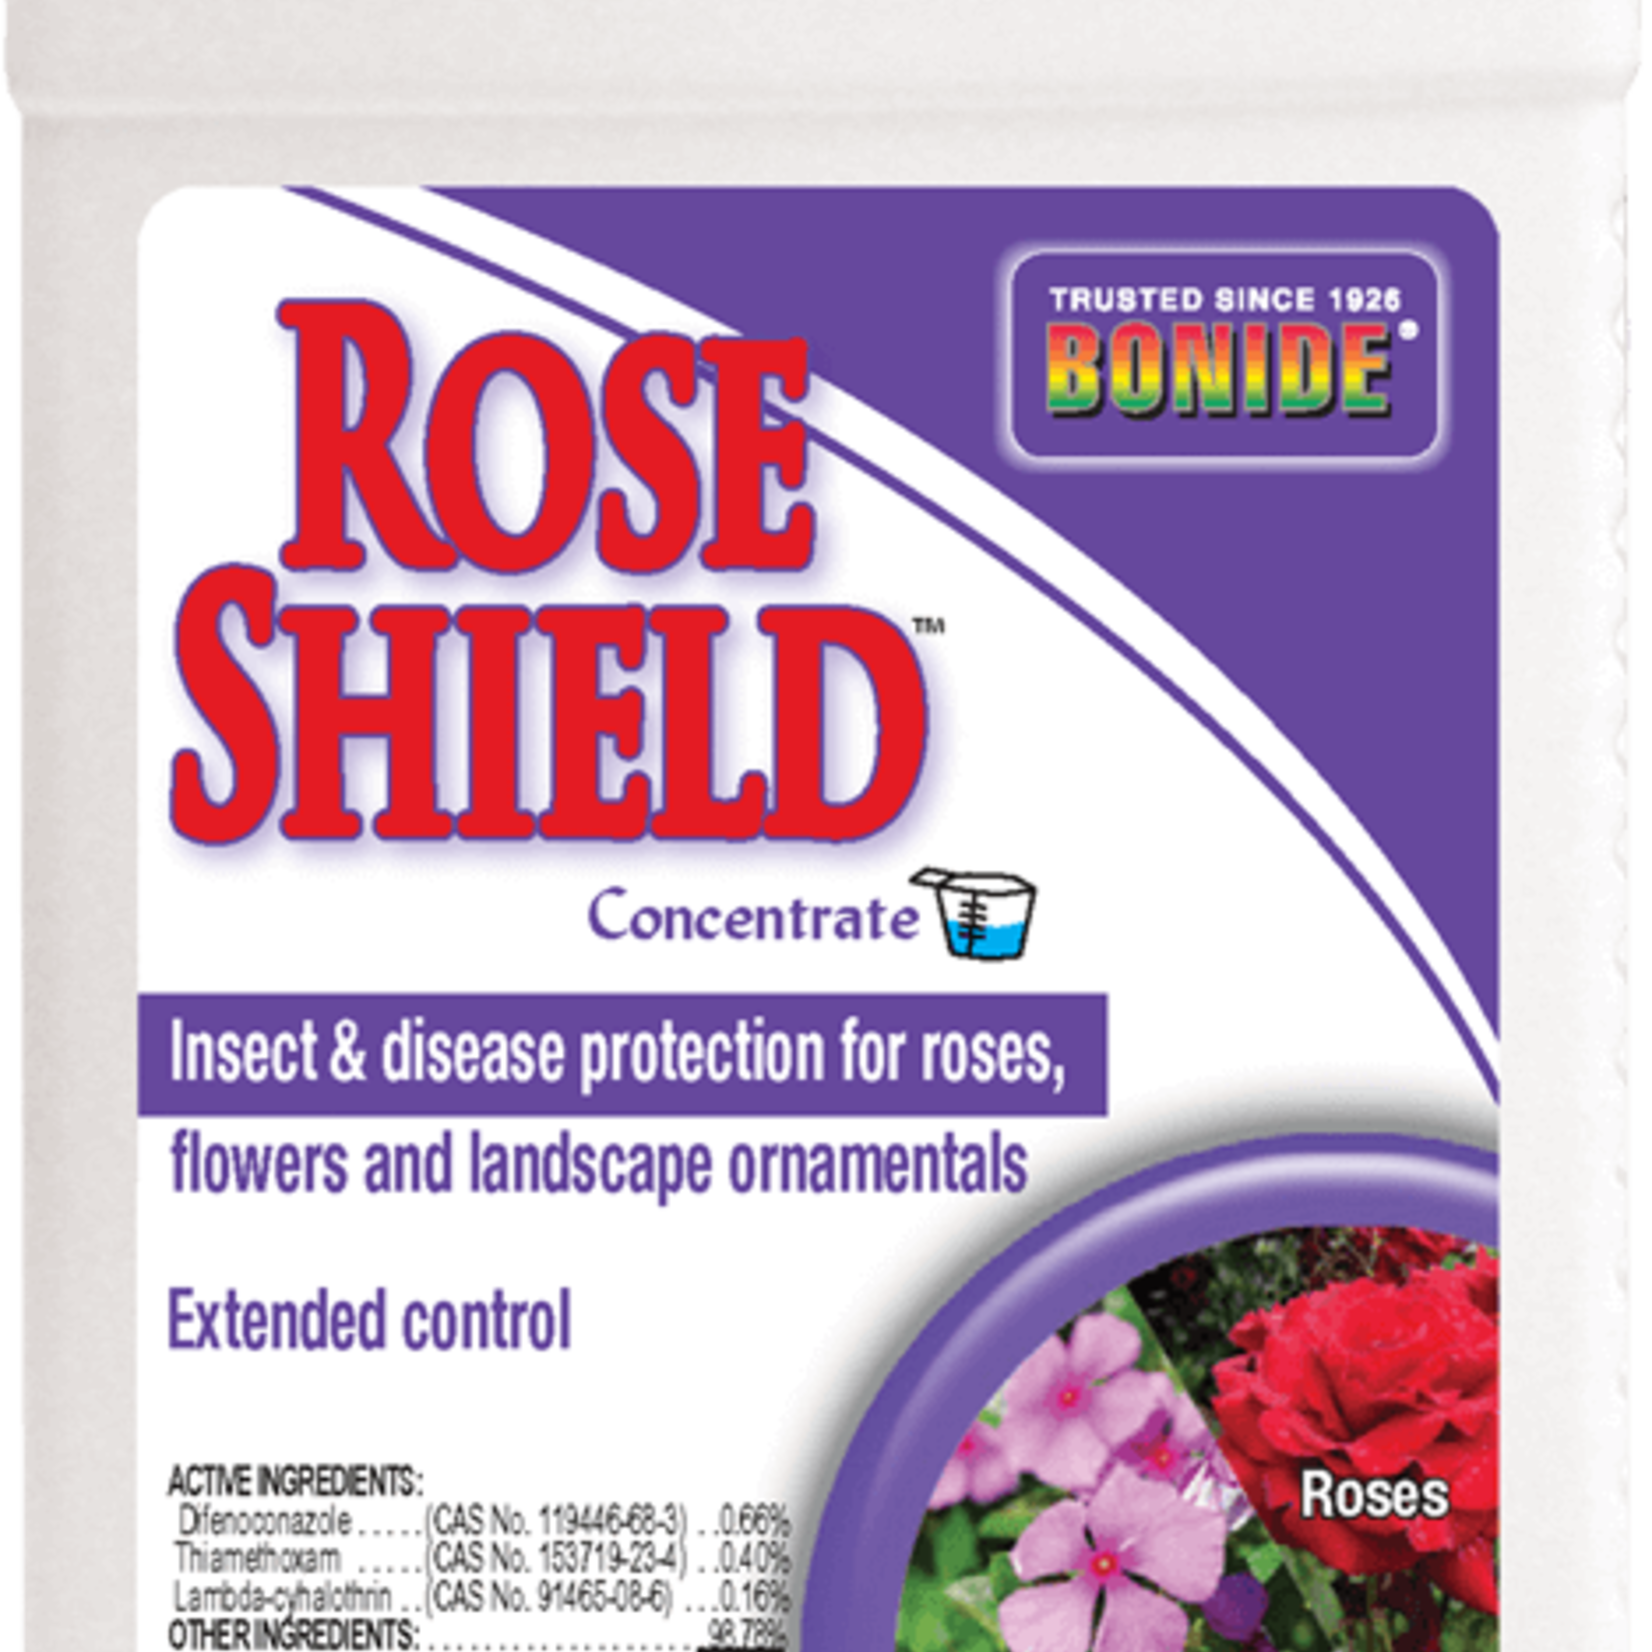 Bonide Rose Shield Cocentrate 1 pt.